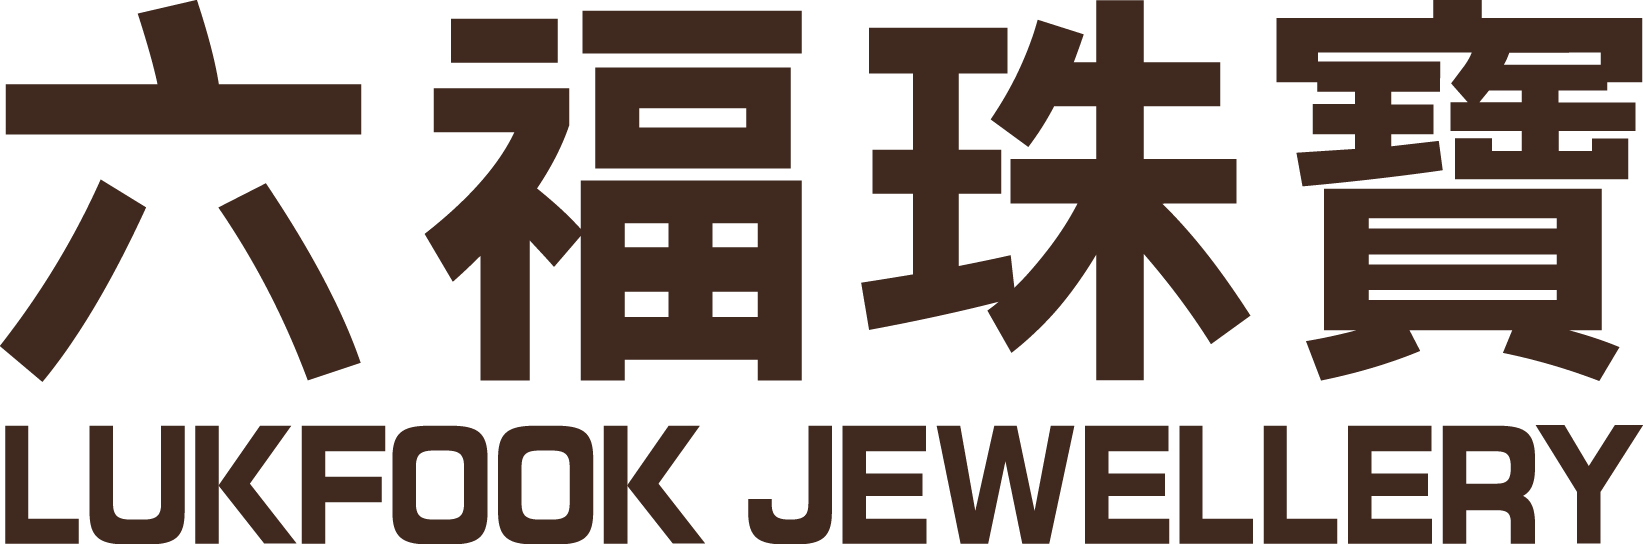 六福珠宝logo图片图片